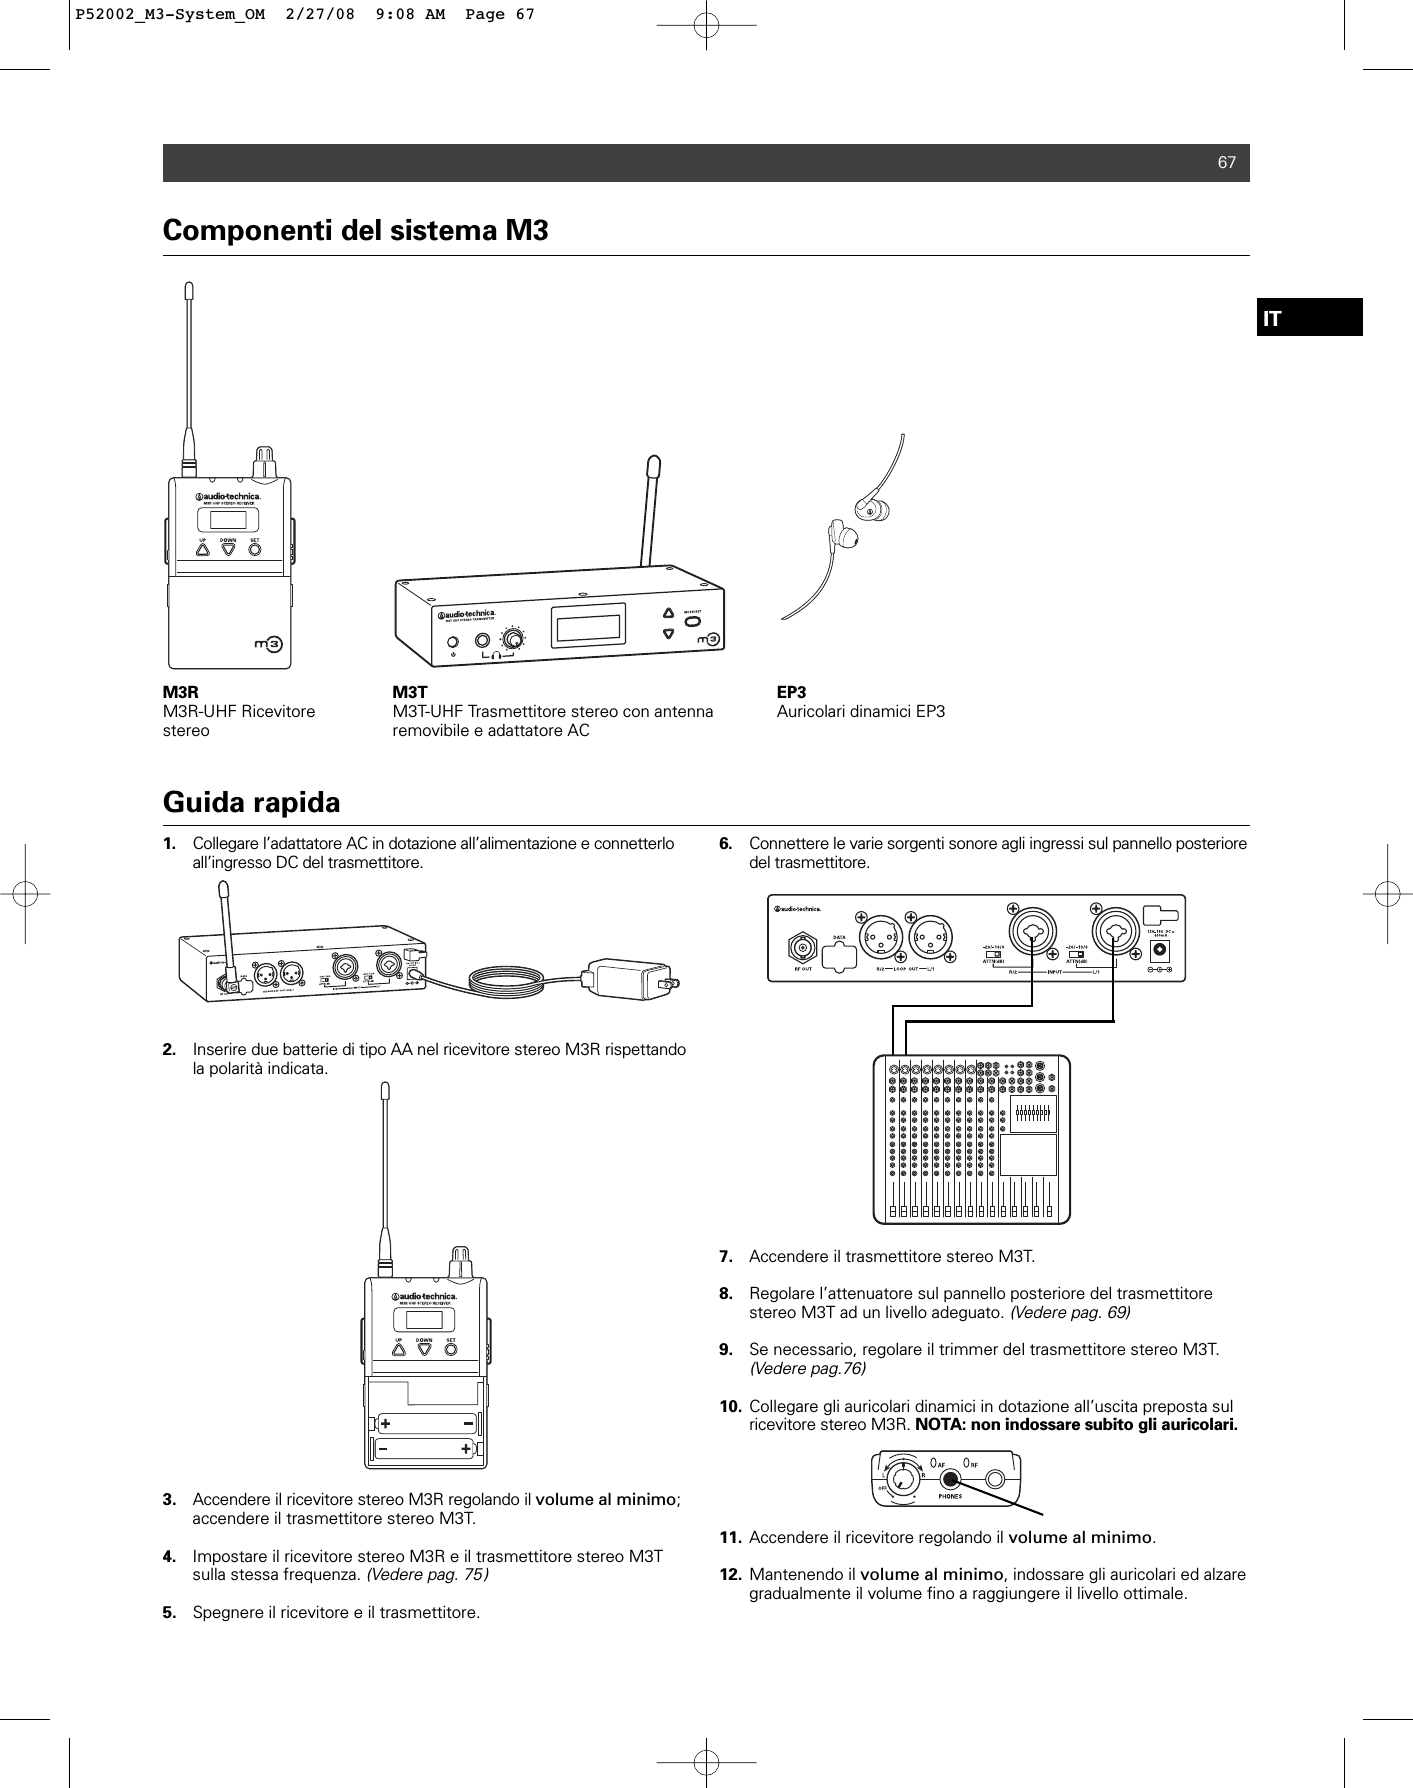 Componenti del sistema M3M3R M3R-UHF RicevitorestereoM3T M3T-UHF Trasmettitore stereo con antenna removibile e adattatore ACEP3Auricolari dinamici EP3 67Guida rapida1. Collegare l’adattatore AC in dotazione all’alimentazione e connetterlo all’ingresso DC del trasmettitore. 2. Inserire due batterie di tipo AA nel ricevitore stereo M3R rispettando la polarità indicata.3. Accendere il ricevitore stereo M3R regolando il volume al minimo; accendere il trasmettitore stereo M3T. 4. Impostare il ricevitore stereo M3R e il trasmettitore stereo M3T sulla stessa frequenza. (Vedere pag. 75)5. Spegnere il ricevitore e il trasmettitore.6. Connettere le varie sorgenti sonore agli ingressi sul pannello posteriore del trasmettitore.7. Accendere il trasmettitore stereo M3T.8. Regolare l’attenuatore sul pannello posteriore del trasmettitore stereo M3T ad un livello adeguato. (Vedere pag. 69)9. Se necessario, regolare il trimmer del trasmettitore stereo M3T.(Vedere pag.76)10. Collegare gli auricolari dinamici in dotazione all’uscita preposta sul ricevitore stereo M3R. NOTA: non indossare subito gli auricolari.11. Accendere il ricevitore regolando il volume al minimo.12. Mantenendo il volume al minimo, indossare gli auricolari ed alzare gradualmente il volume fino a raggiungere il livello ottimale.ITP52002_M3-System_OM  2/27/08  9:08 AM  Page 67